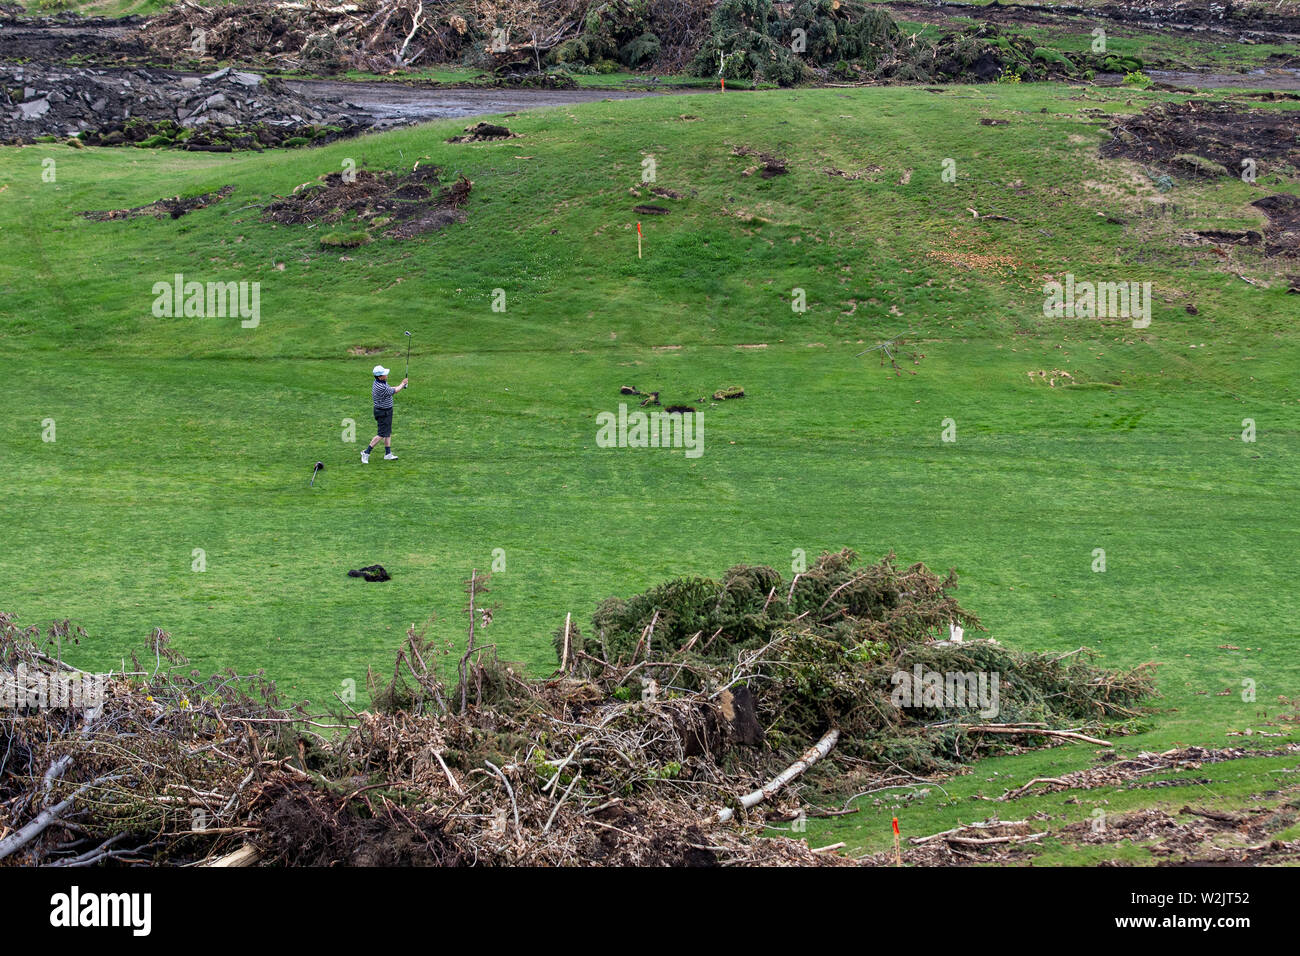 CALGARY, Canada - luglio 7, 2019: un golfista non identificabili gioca a golf in mezzo alle macerie di un campo da golf sotto la demolizione. Tra le principali città del nord Ame Foto Stock